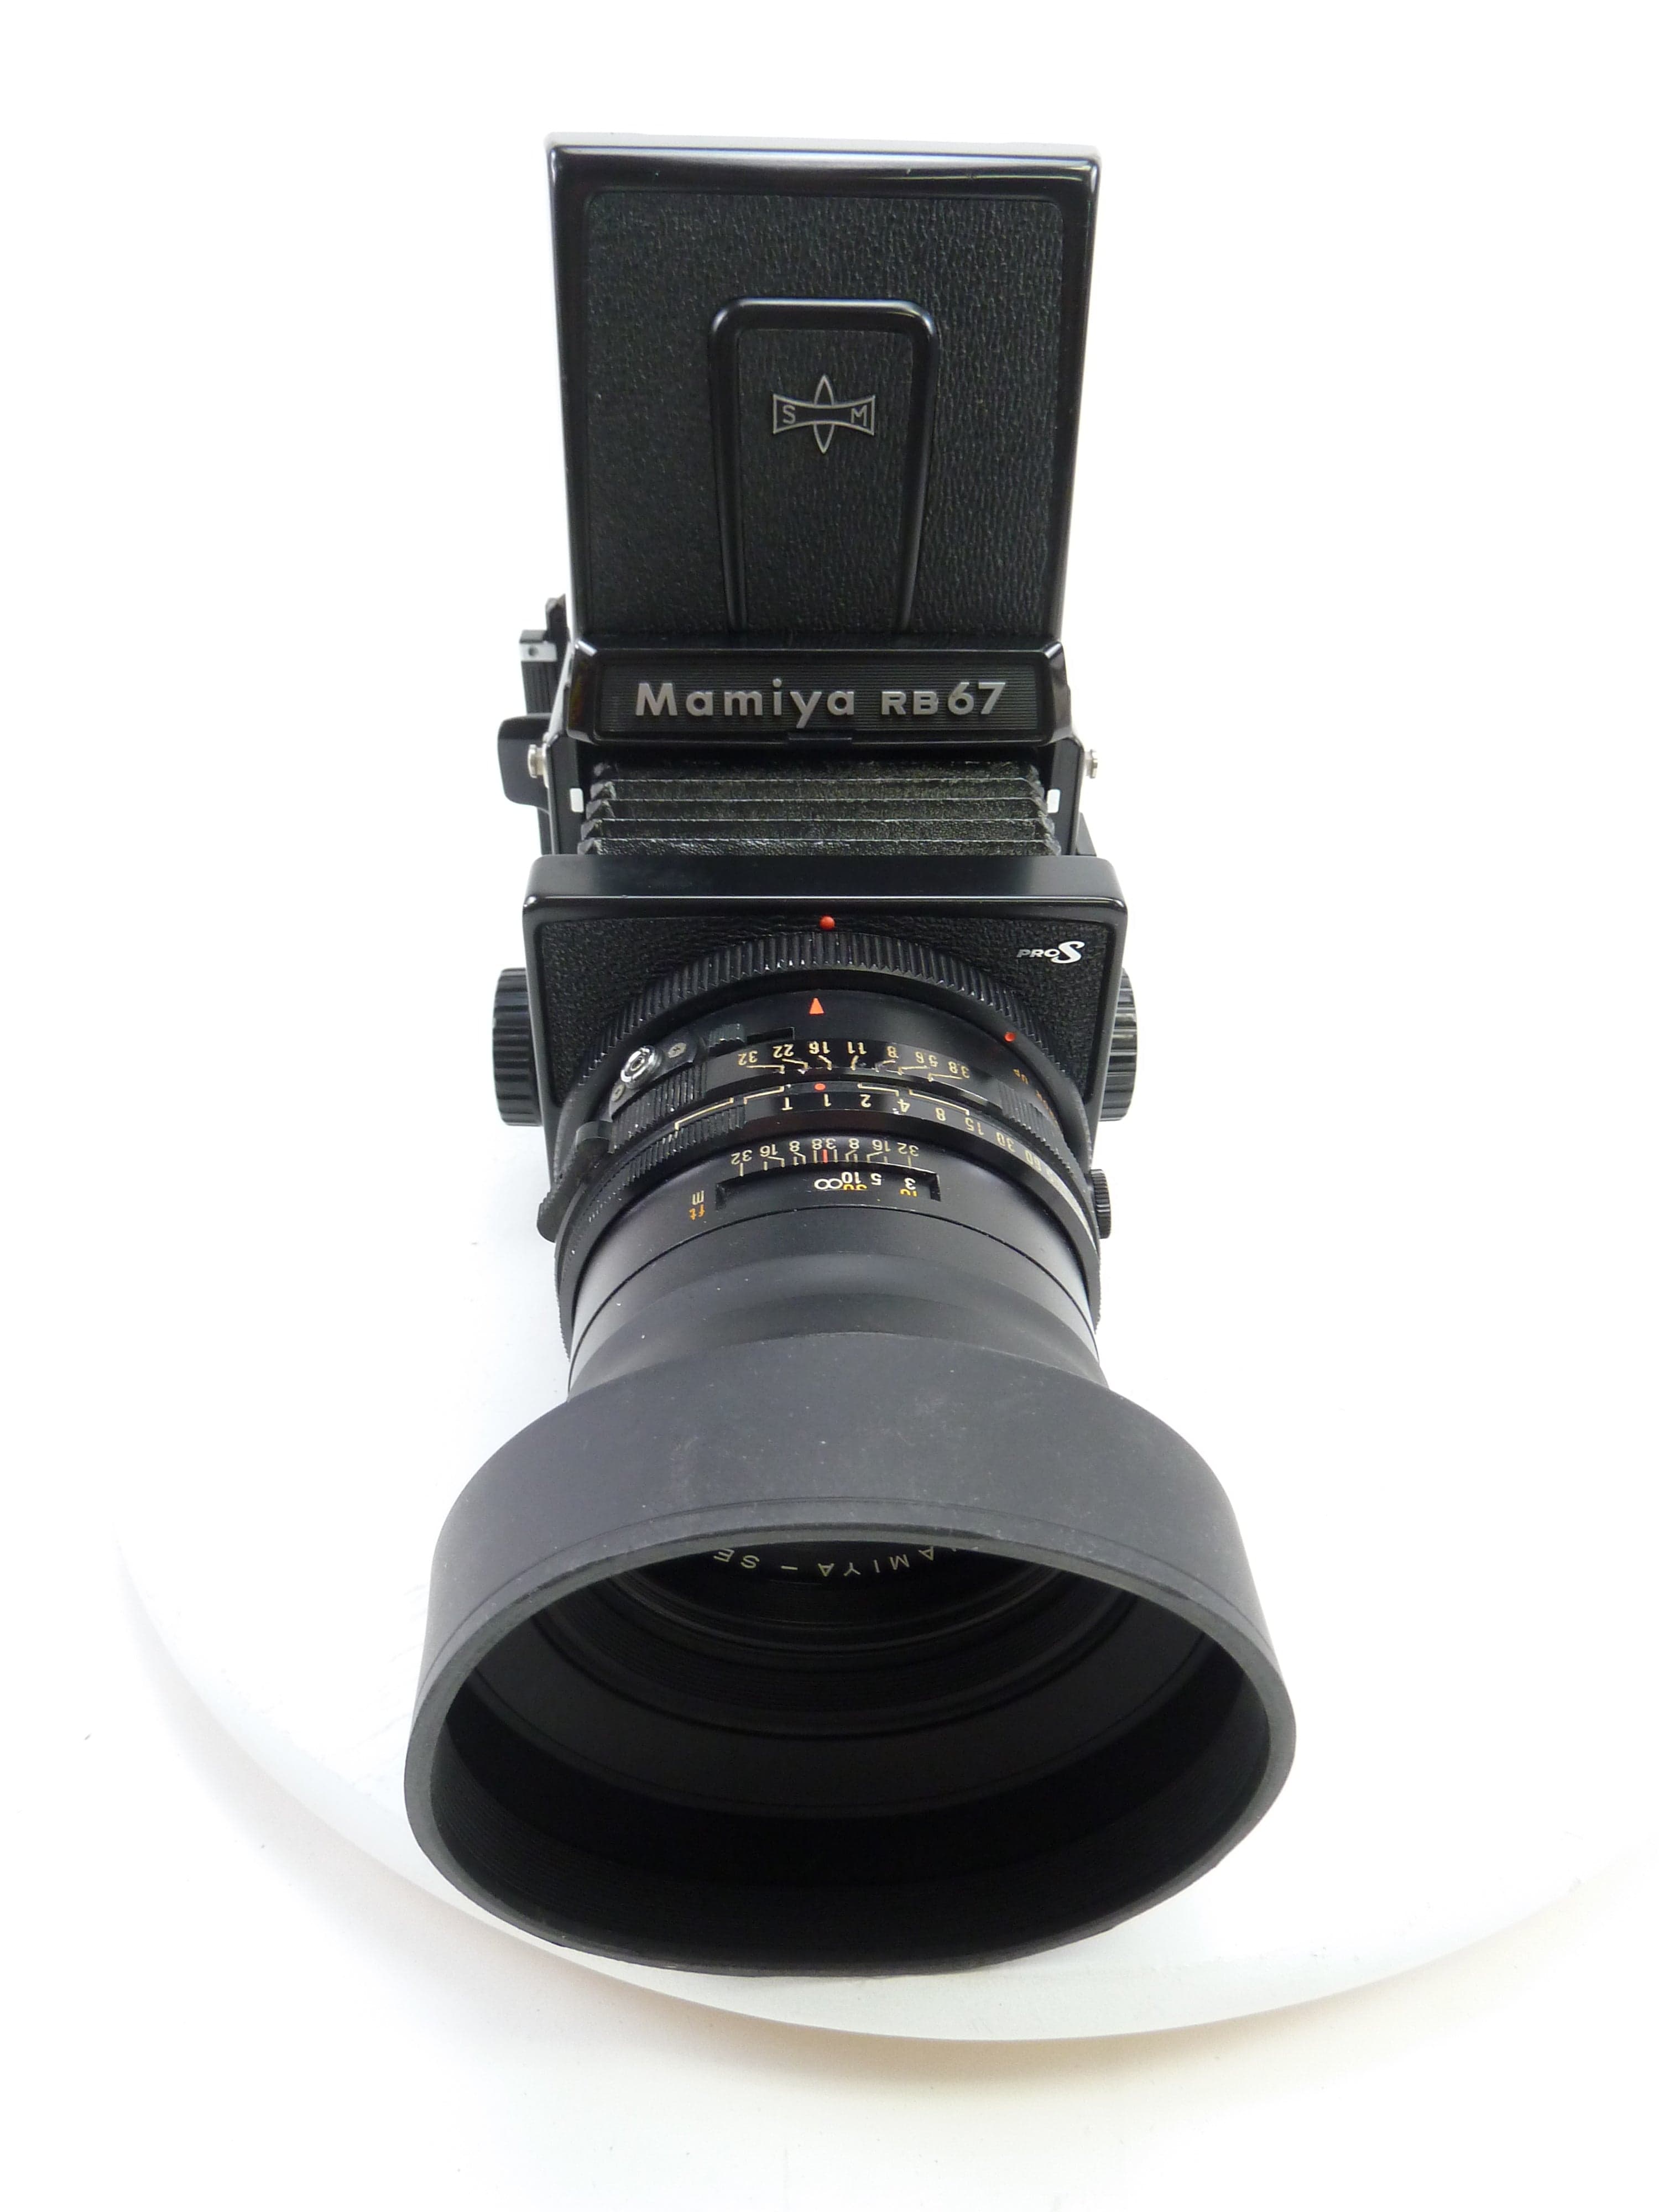 RB67 PRO S + C 90mm F3.8 + 120 - フィルムカメラ